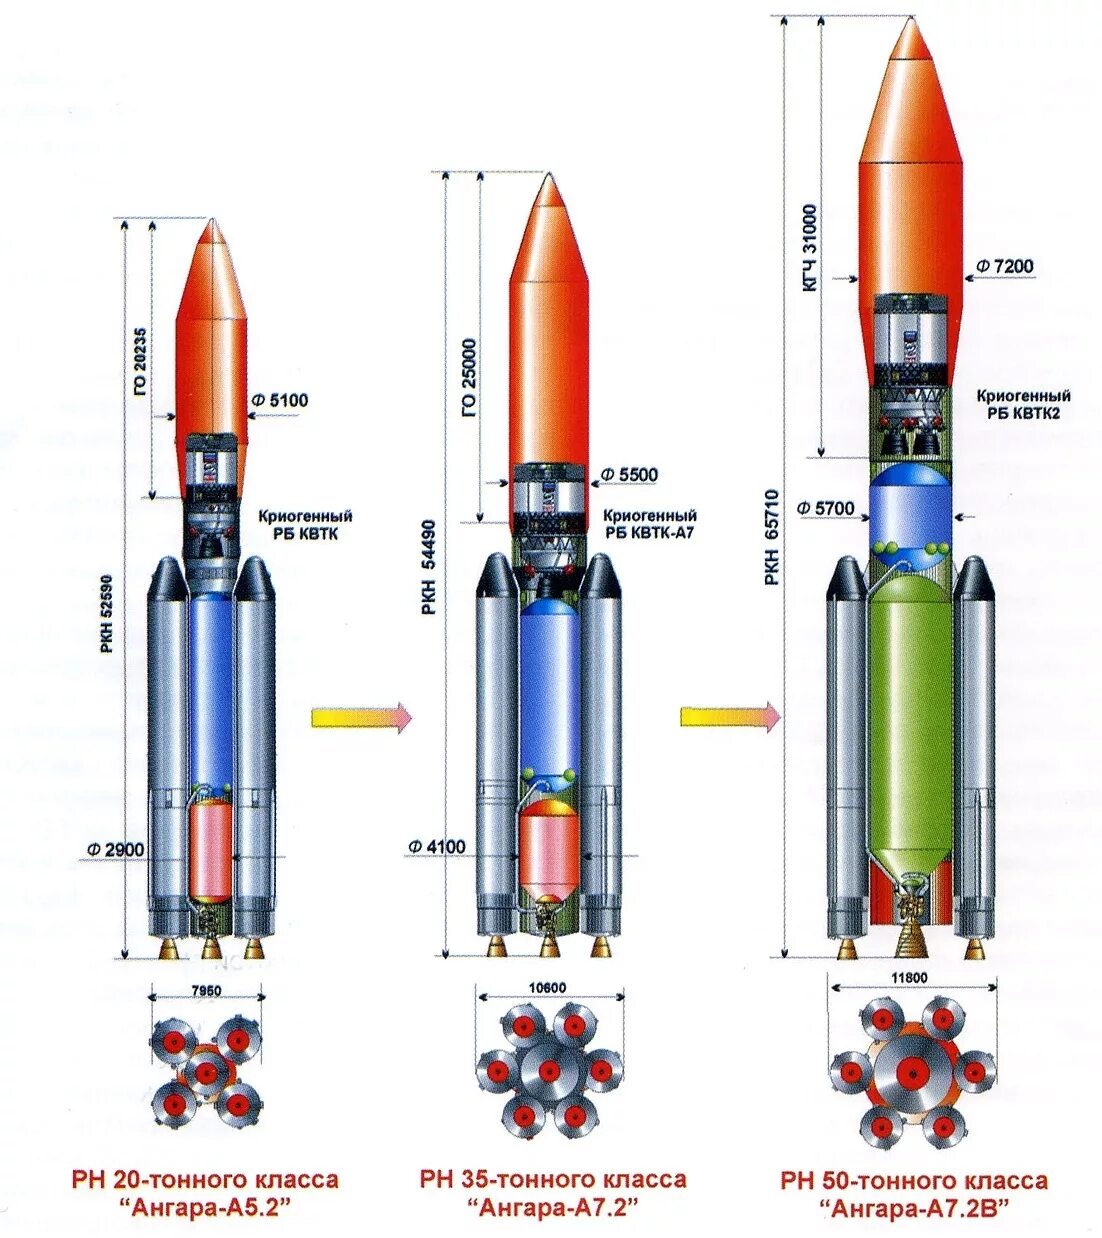 Ракета носитель Ангара а5 чертеж. Ракета Ангара а5 чертеж. Ангара-а5 ракета-носитель схема. Ангара 1.2 ракета-носитель чертеж. Ангара а5 размеры